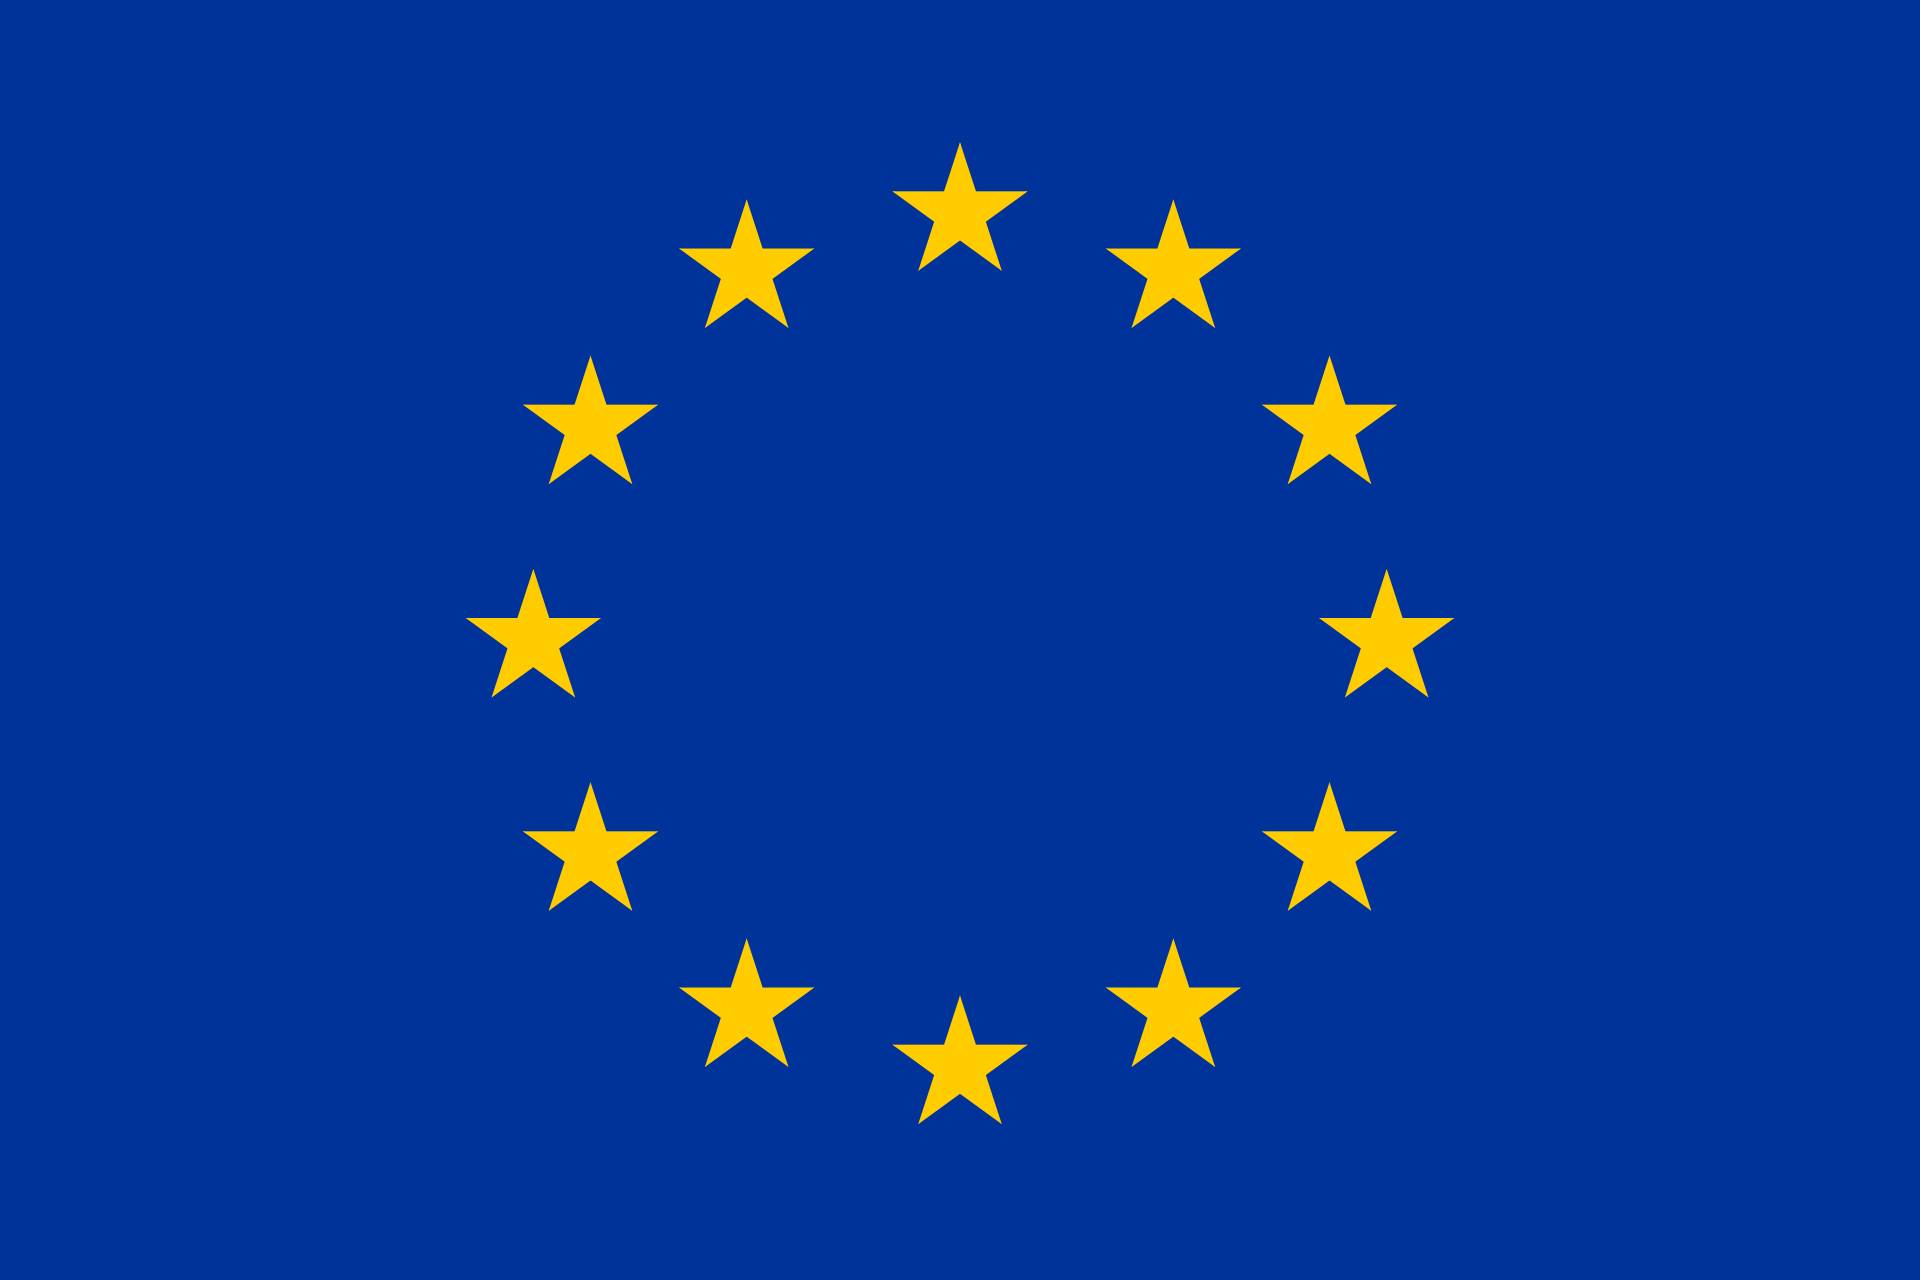 Die Flagge der Europäischen Union.